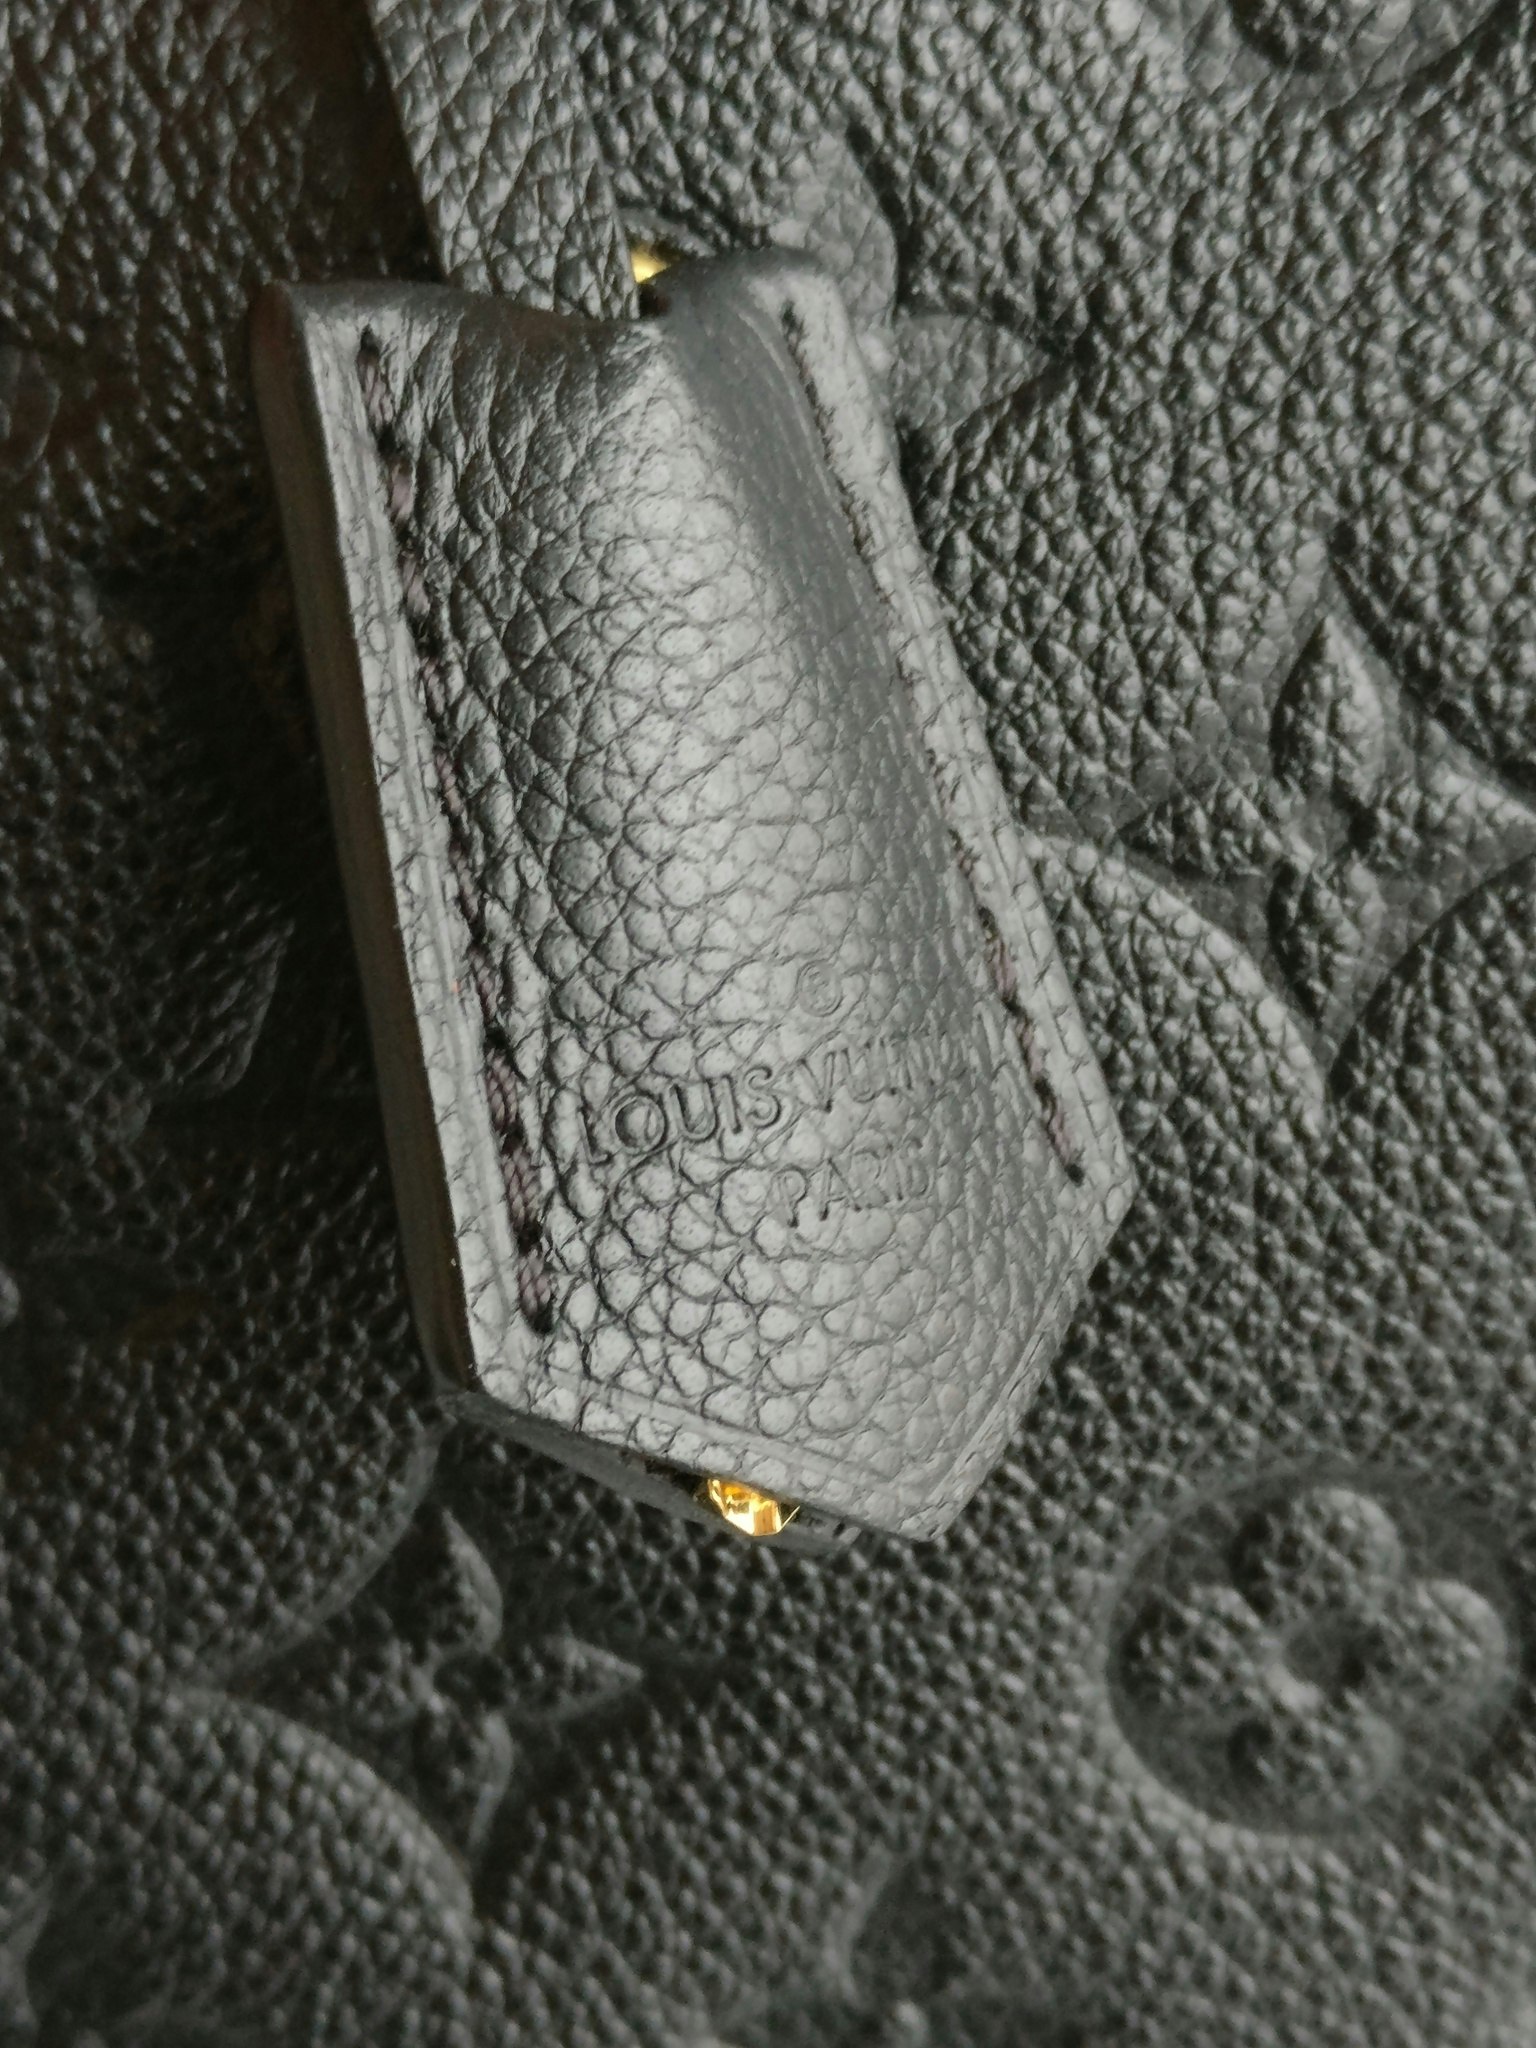 Shop Louis Vuitton MONTAIGNE Montaigne mm (M41056) by OceanPalace